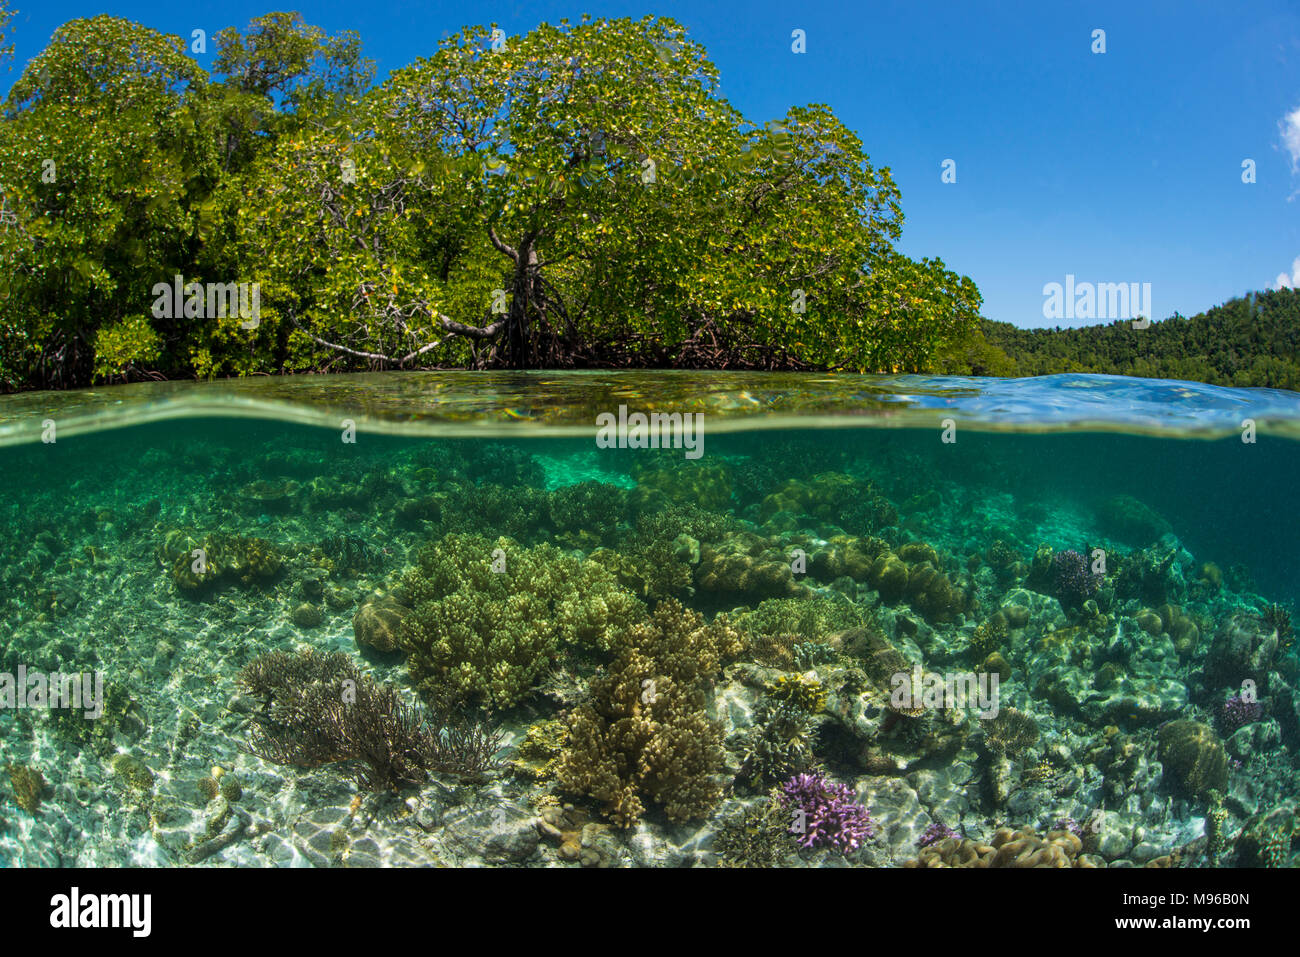 Un photo d'un récif de corail dans l'eau tropicale claire à côté d'une forêt de mangrove à Yangefo, Waigeo, Raja Ampat, Indonésie Parc Marin. Banque D'Images